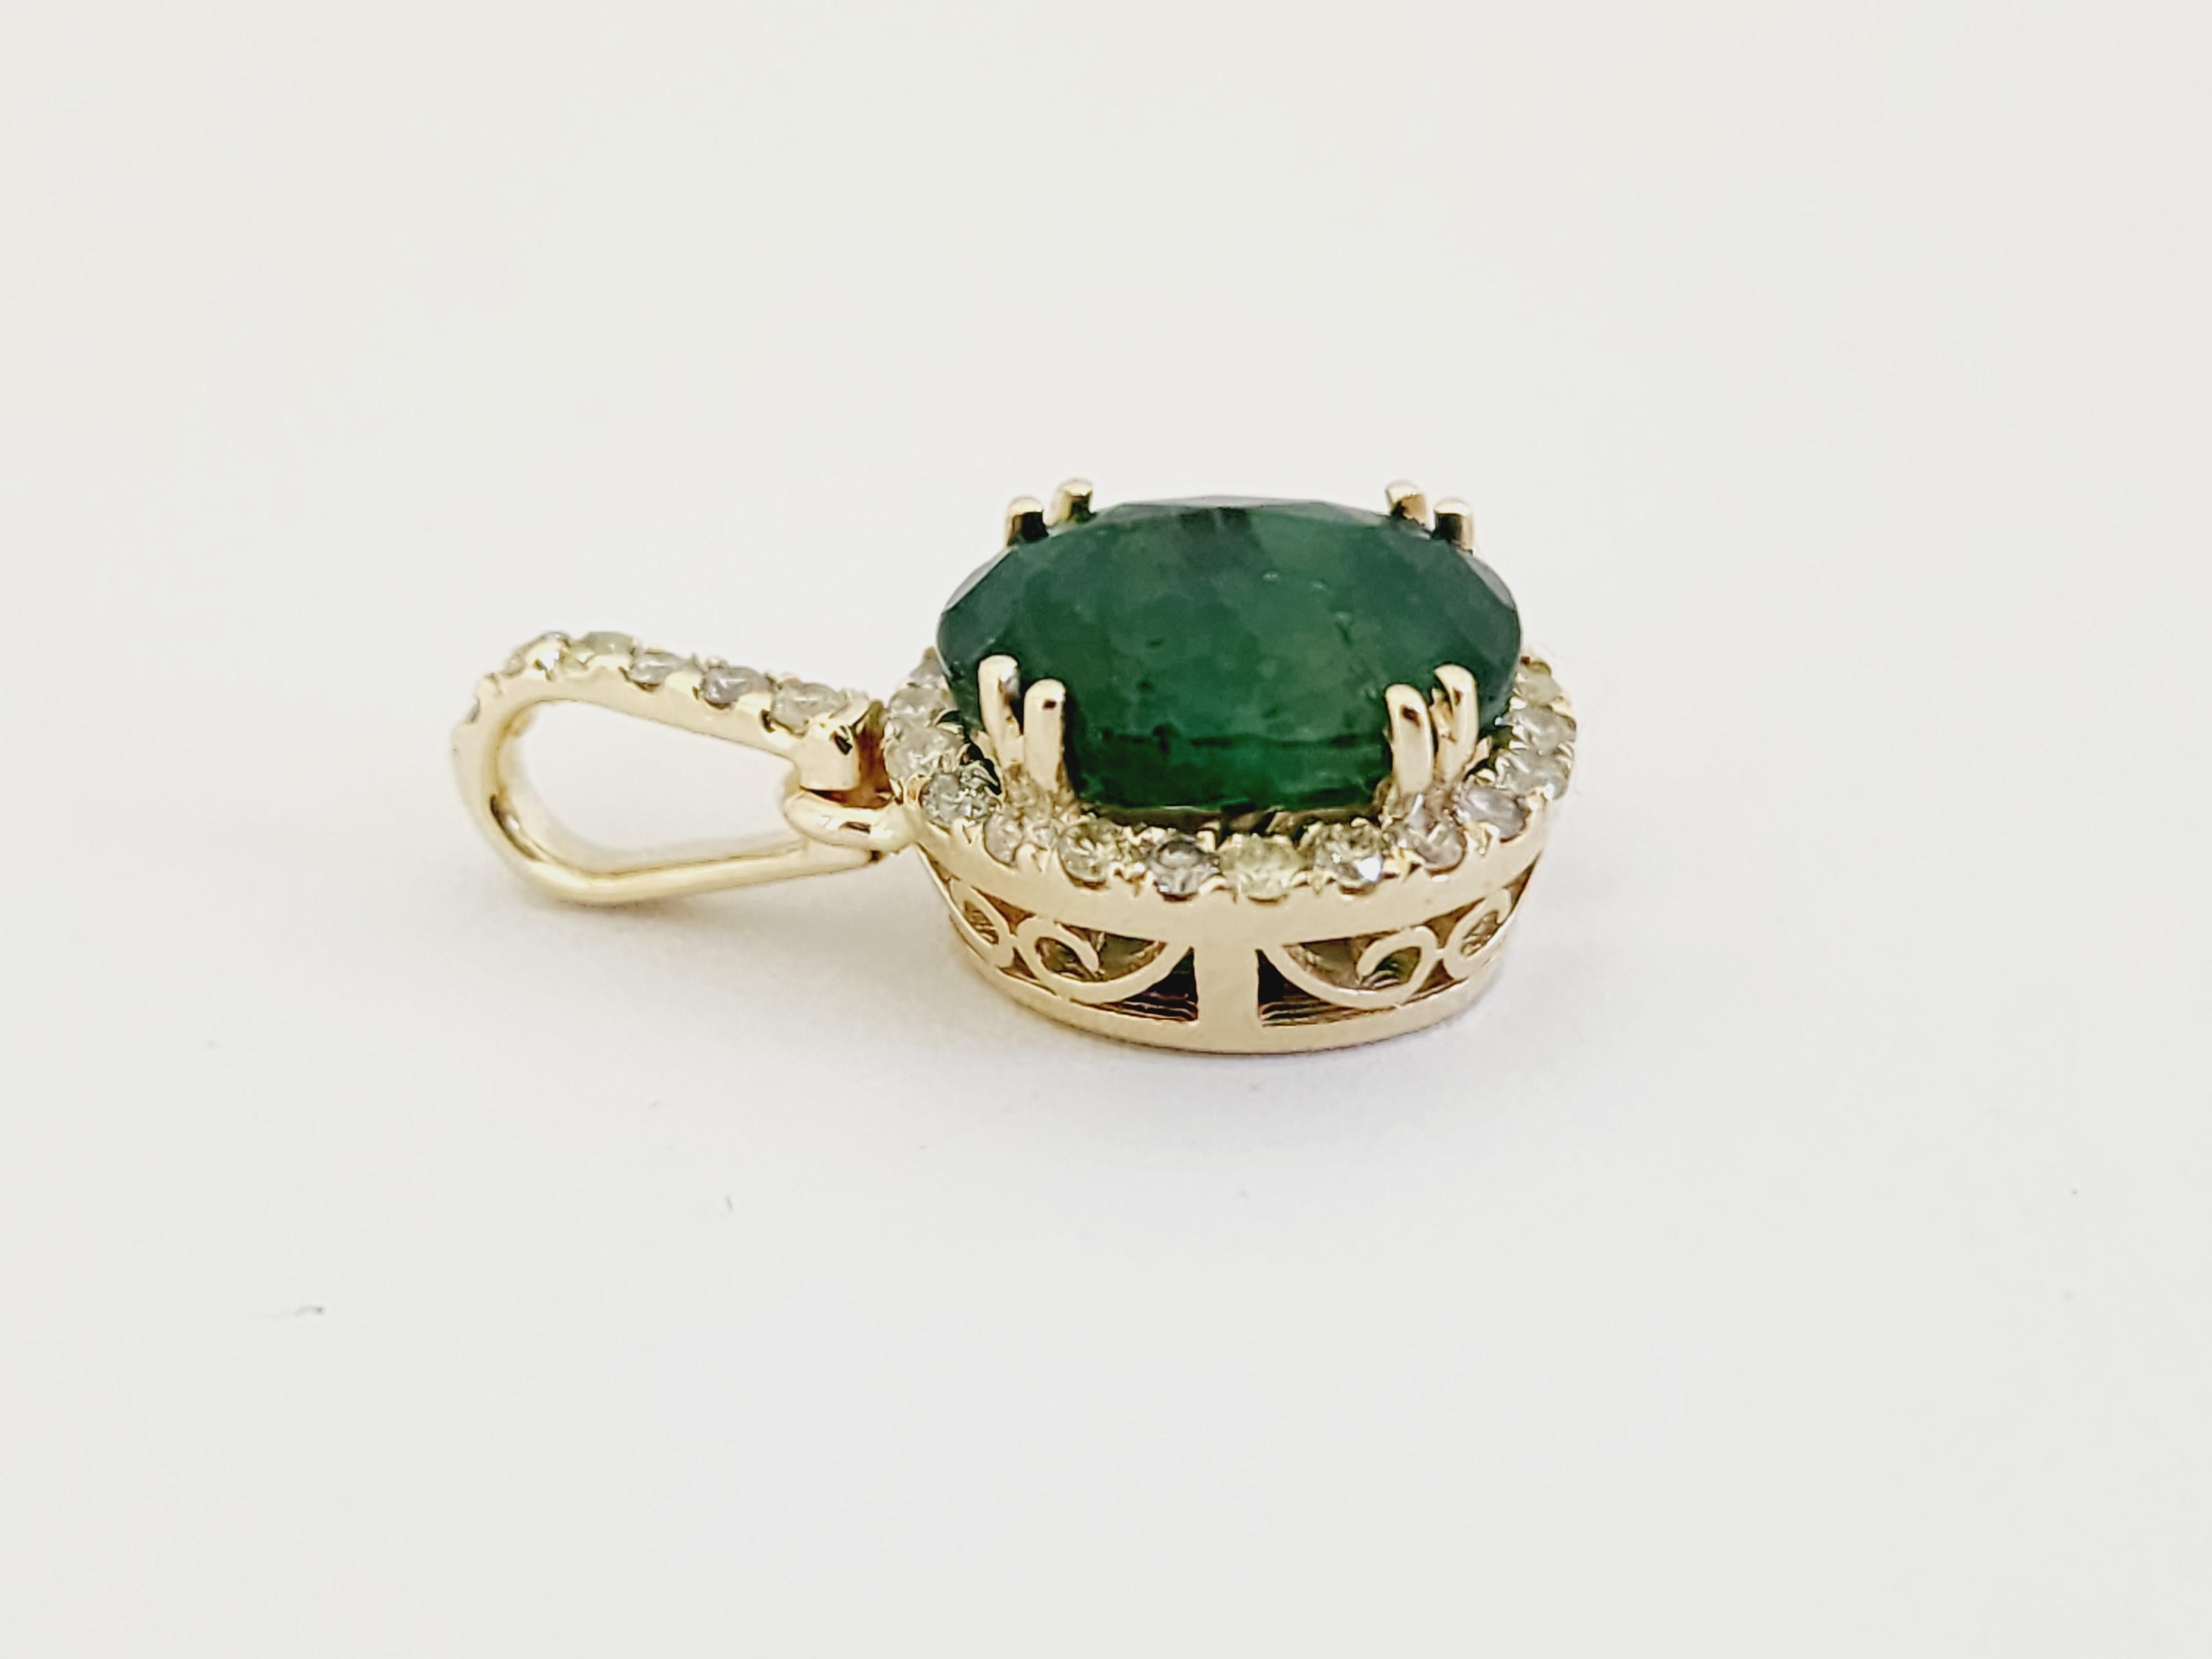 Emerald Cut 2.90 Carats Natural Emerald Diamond Pendant Yellow Gold 14 Karat For Sale